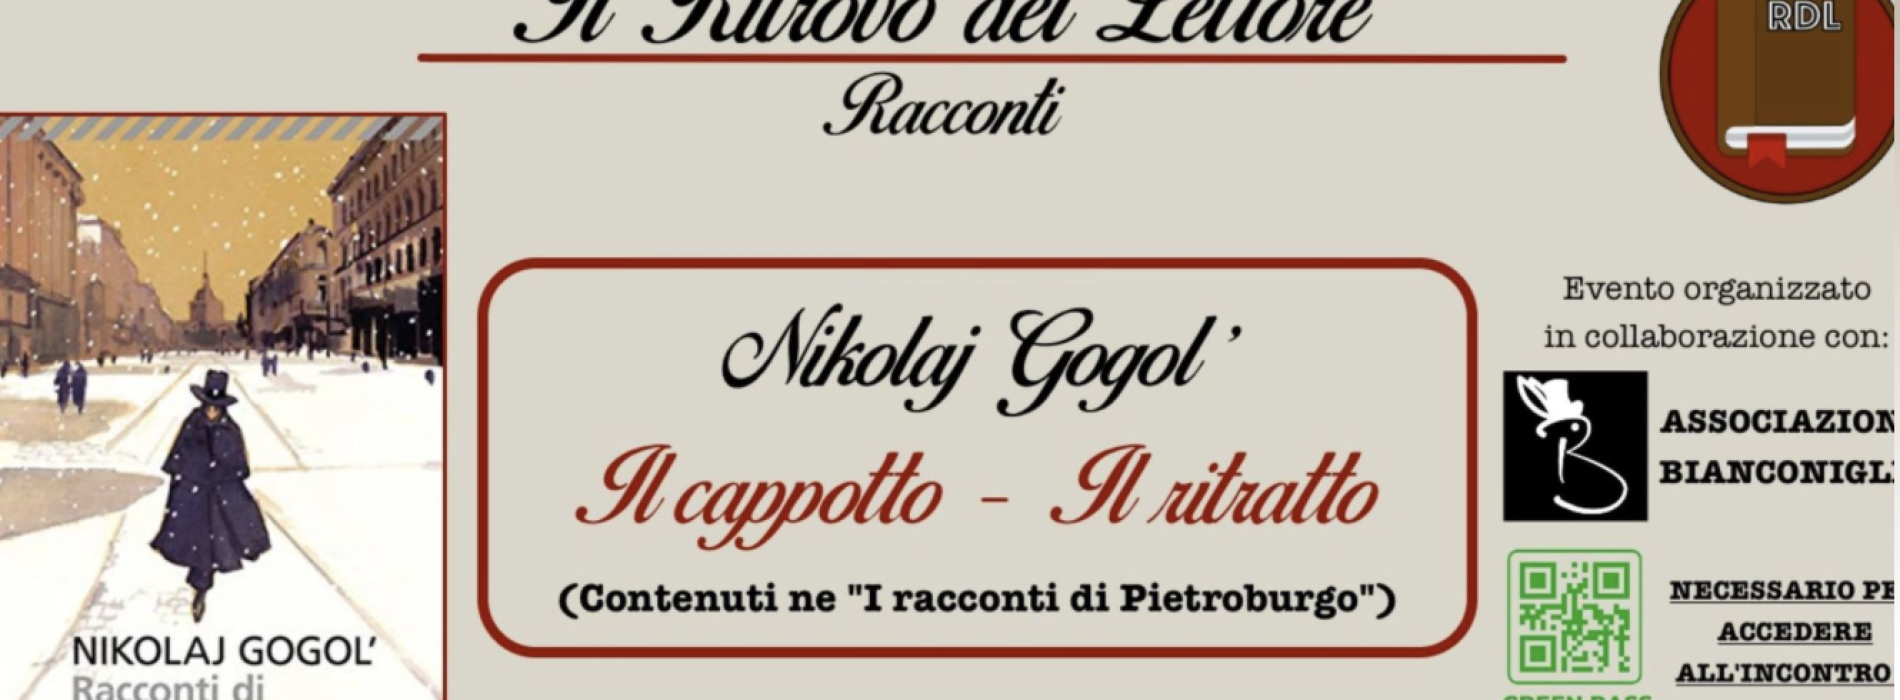 Un martedì da lettori, ritrovarsi in compagnia di Nikolaj Gogol